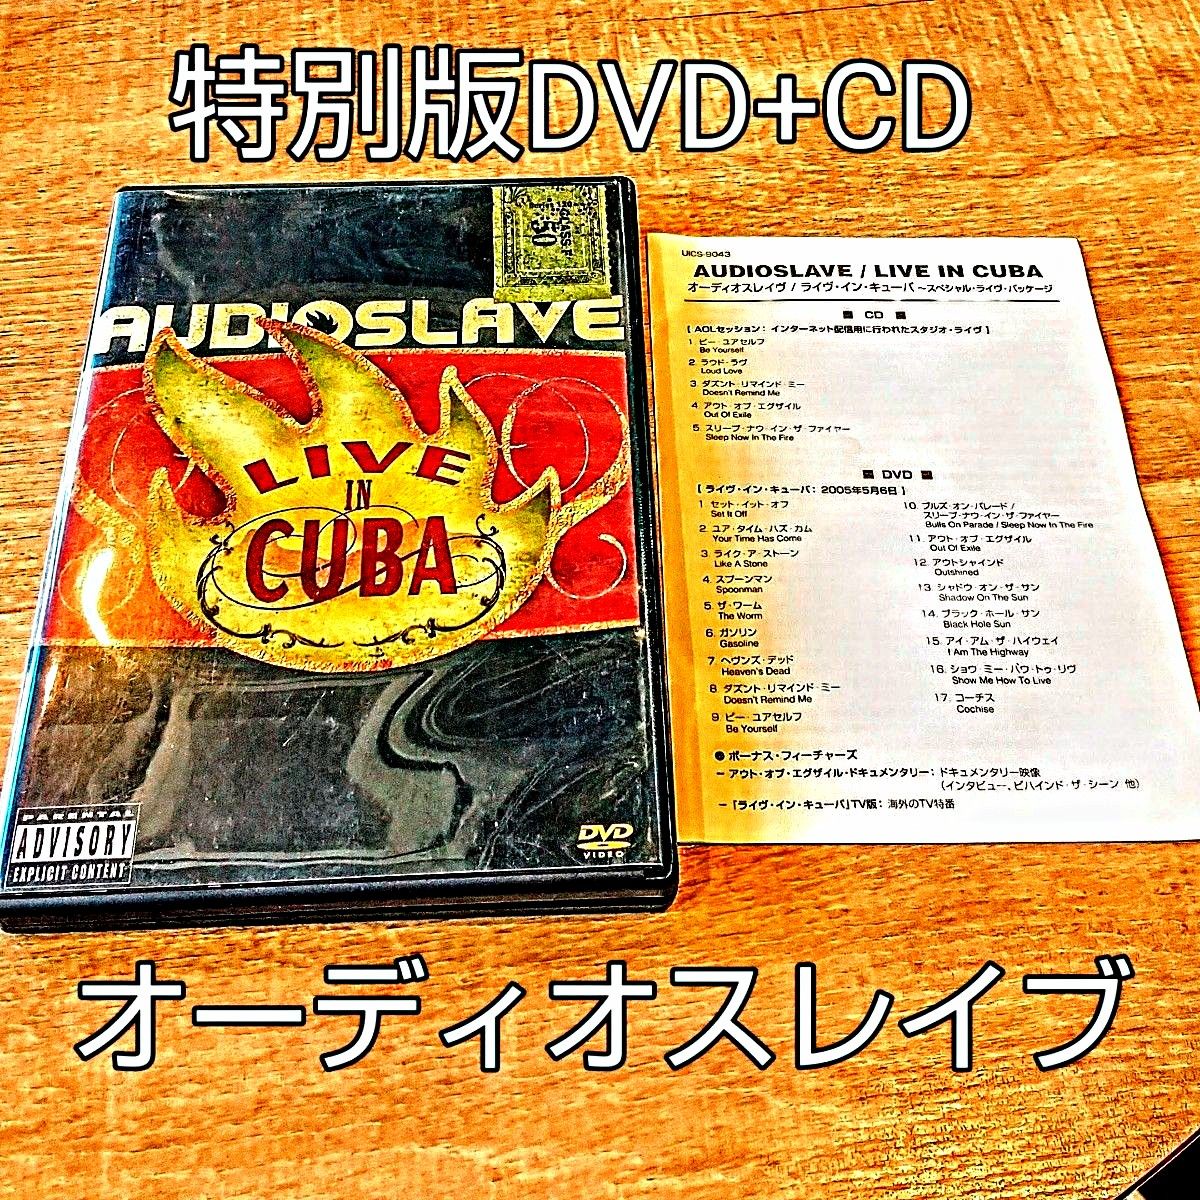 ※洋楽DVD+CD【オーディオスレイヴ】【LiveinCuba特別エディション】◆Audioslave※故・クリスコーネル